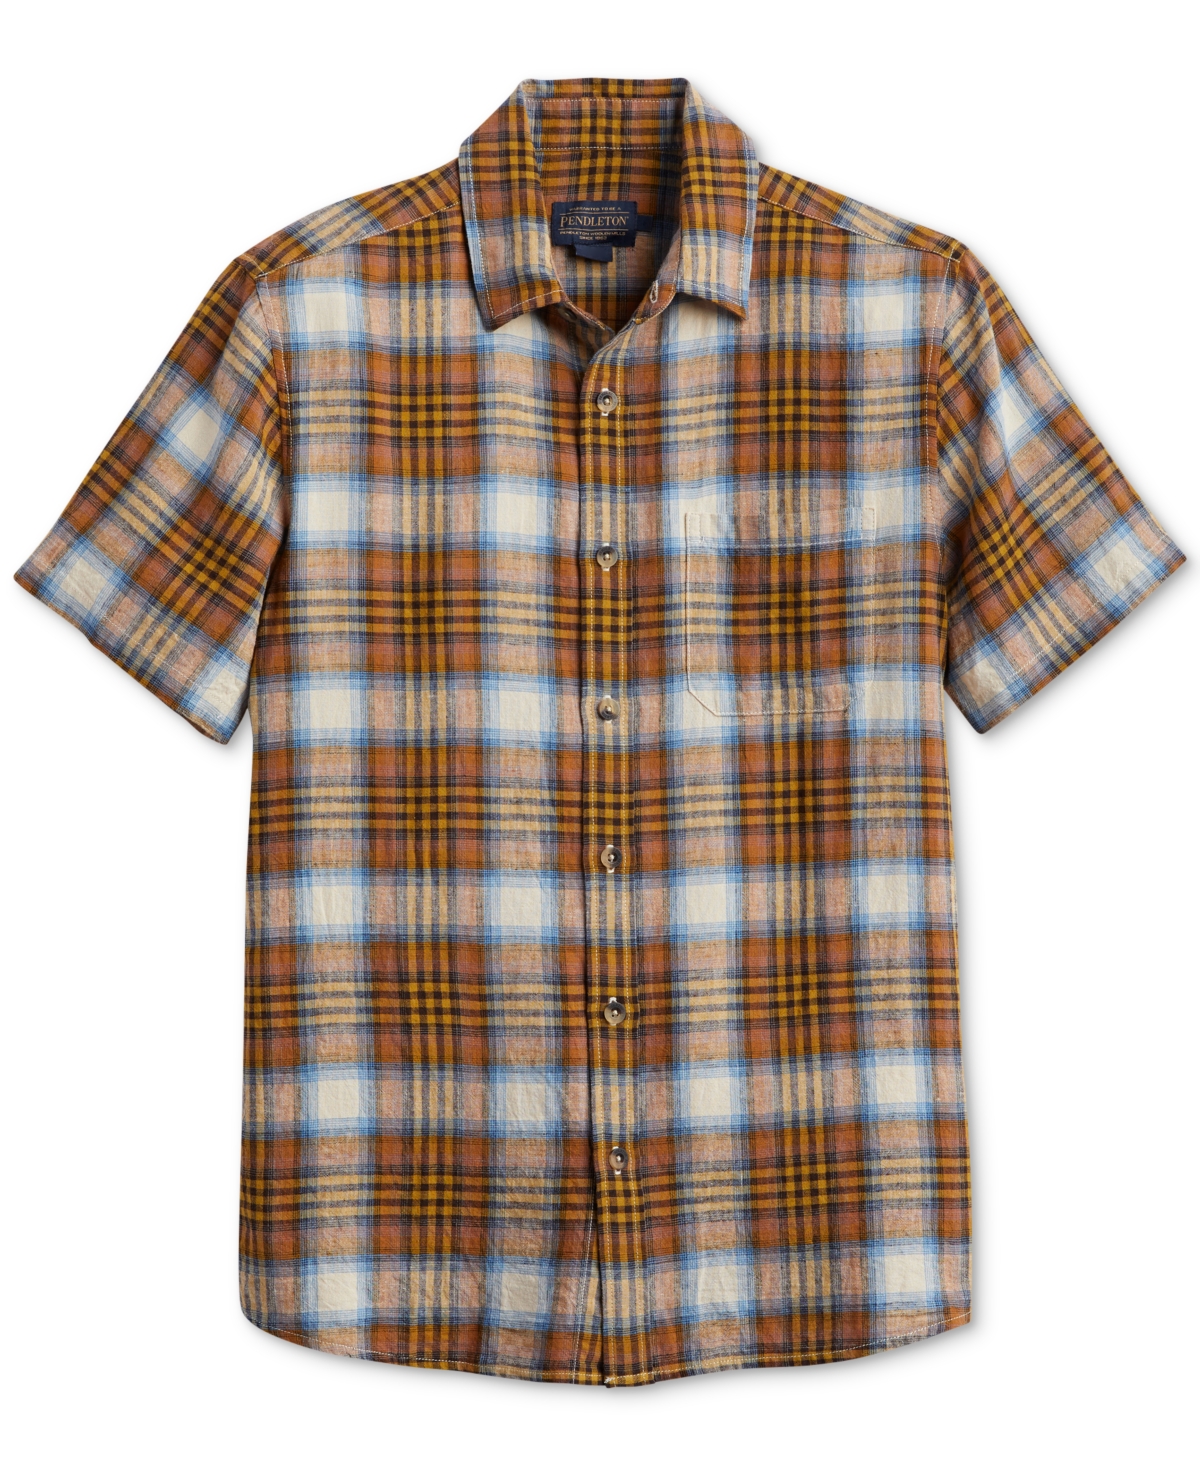 Men's Dawson Plaid Short Sleeve Button-Front Shirt - Adobe, Tan, Blue Plaid